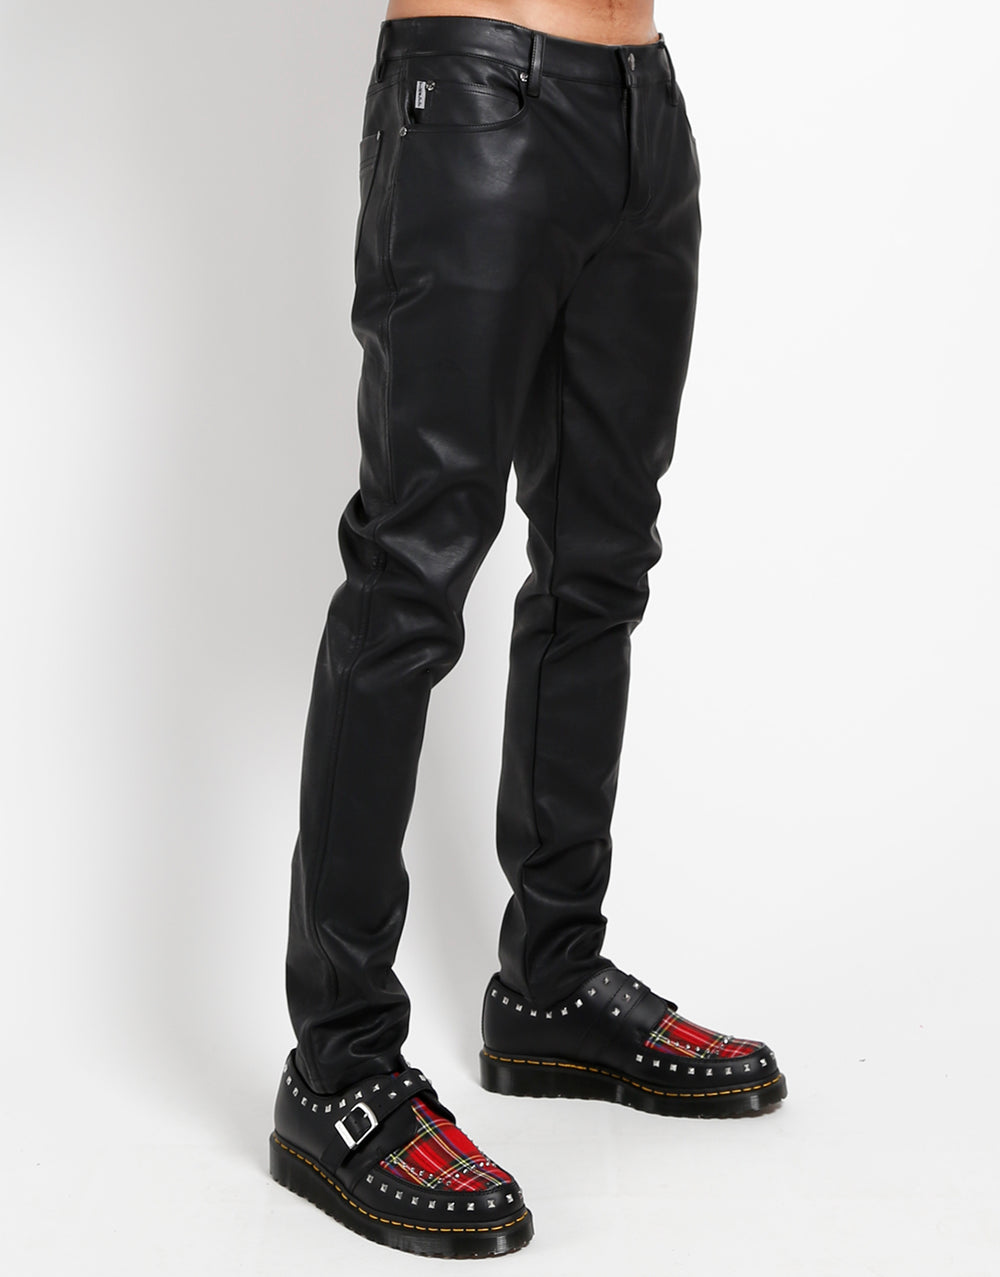 Faux leather pants, P13406